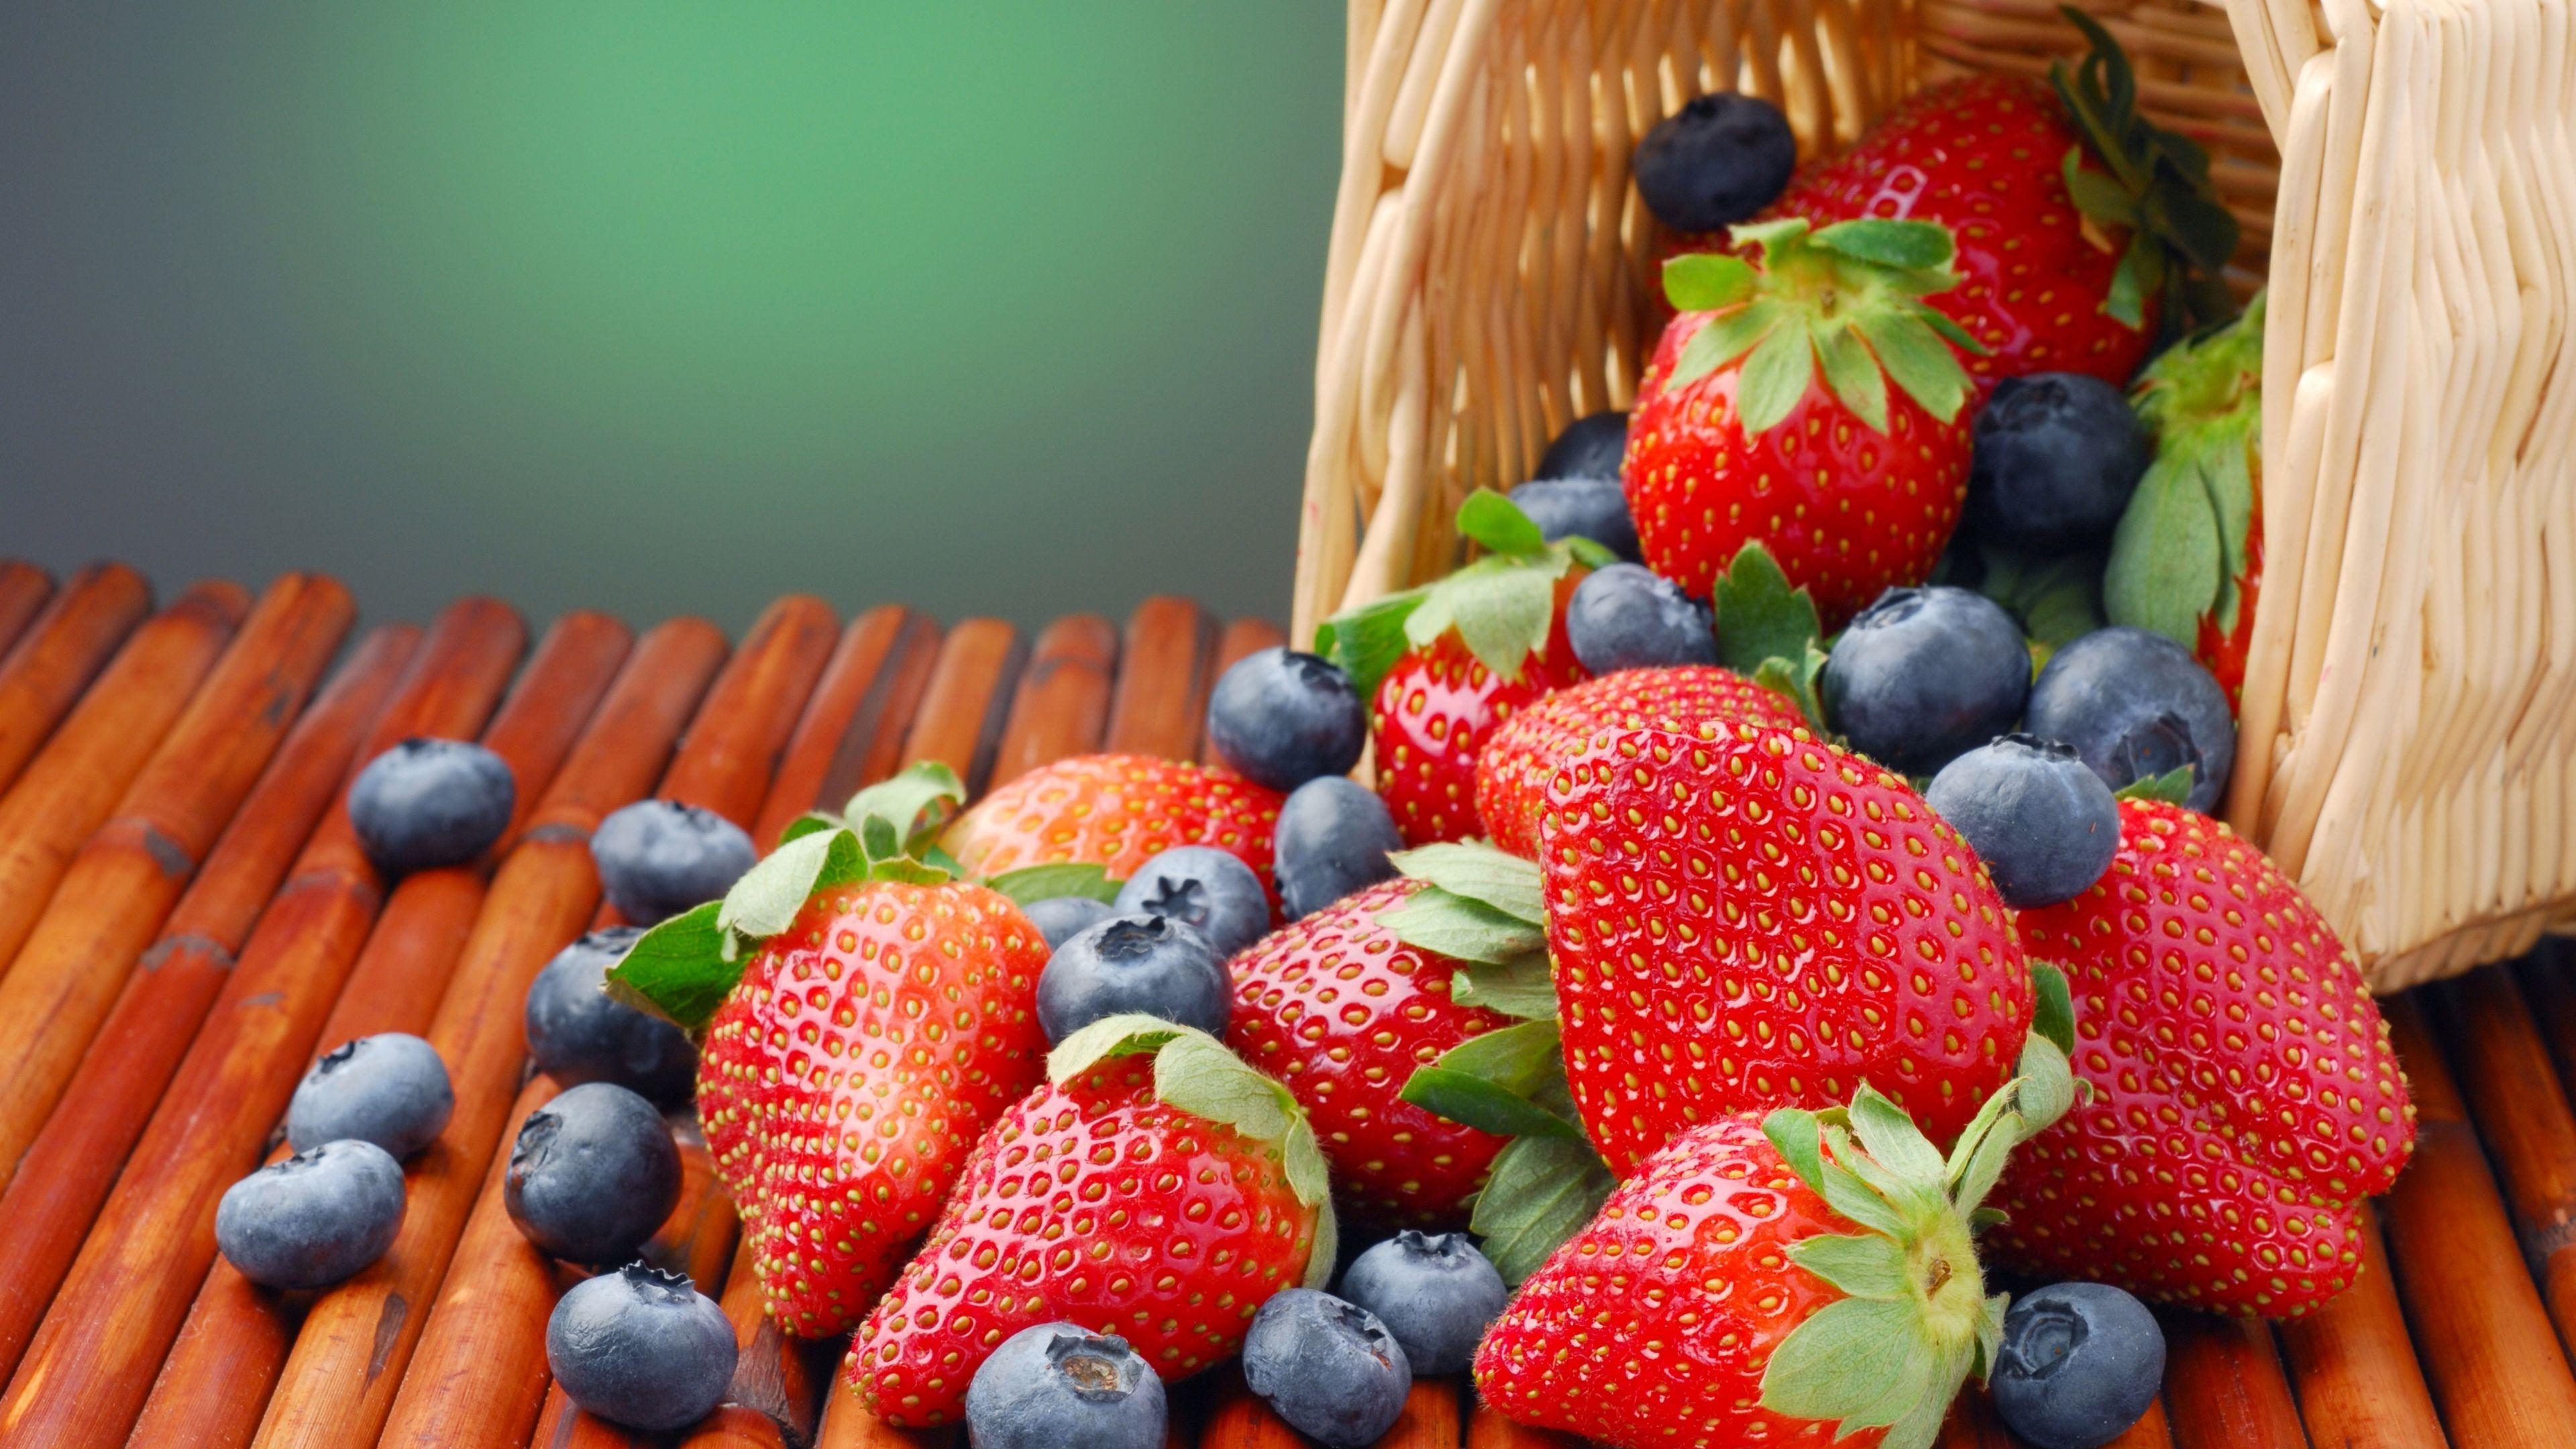 Food 4k Ultra HD Wallpaper Wallpaper.Net. Raw Food Diet, Raw Food Recipes, Fruit